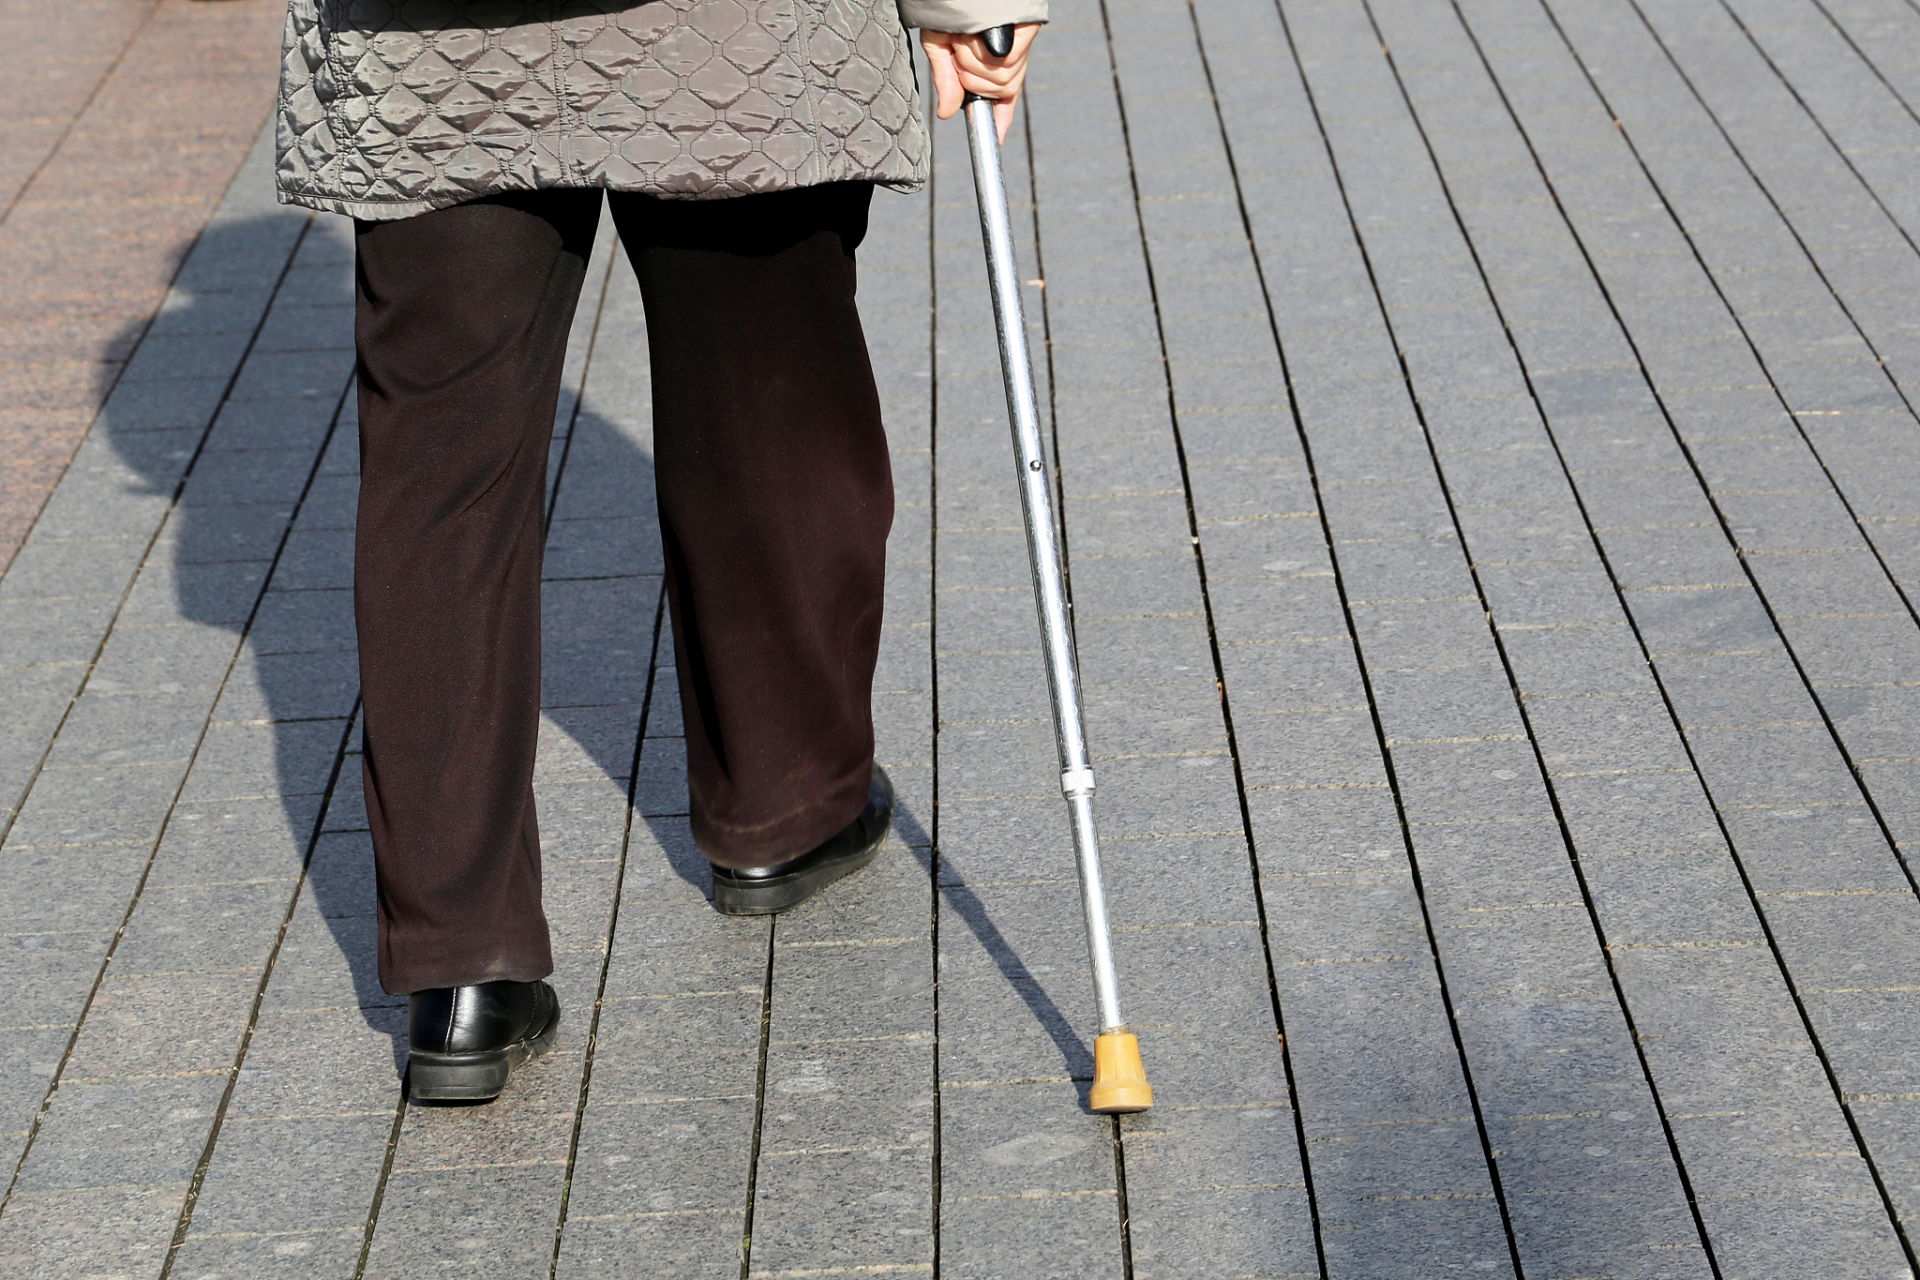 偏瘫患者走路一瘸一拐的原因可 能是患侧肌力不足,平衡功能障碍或患